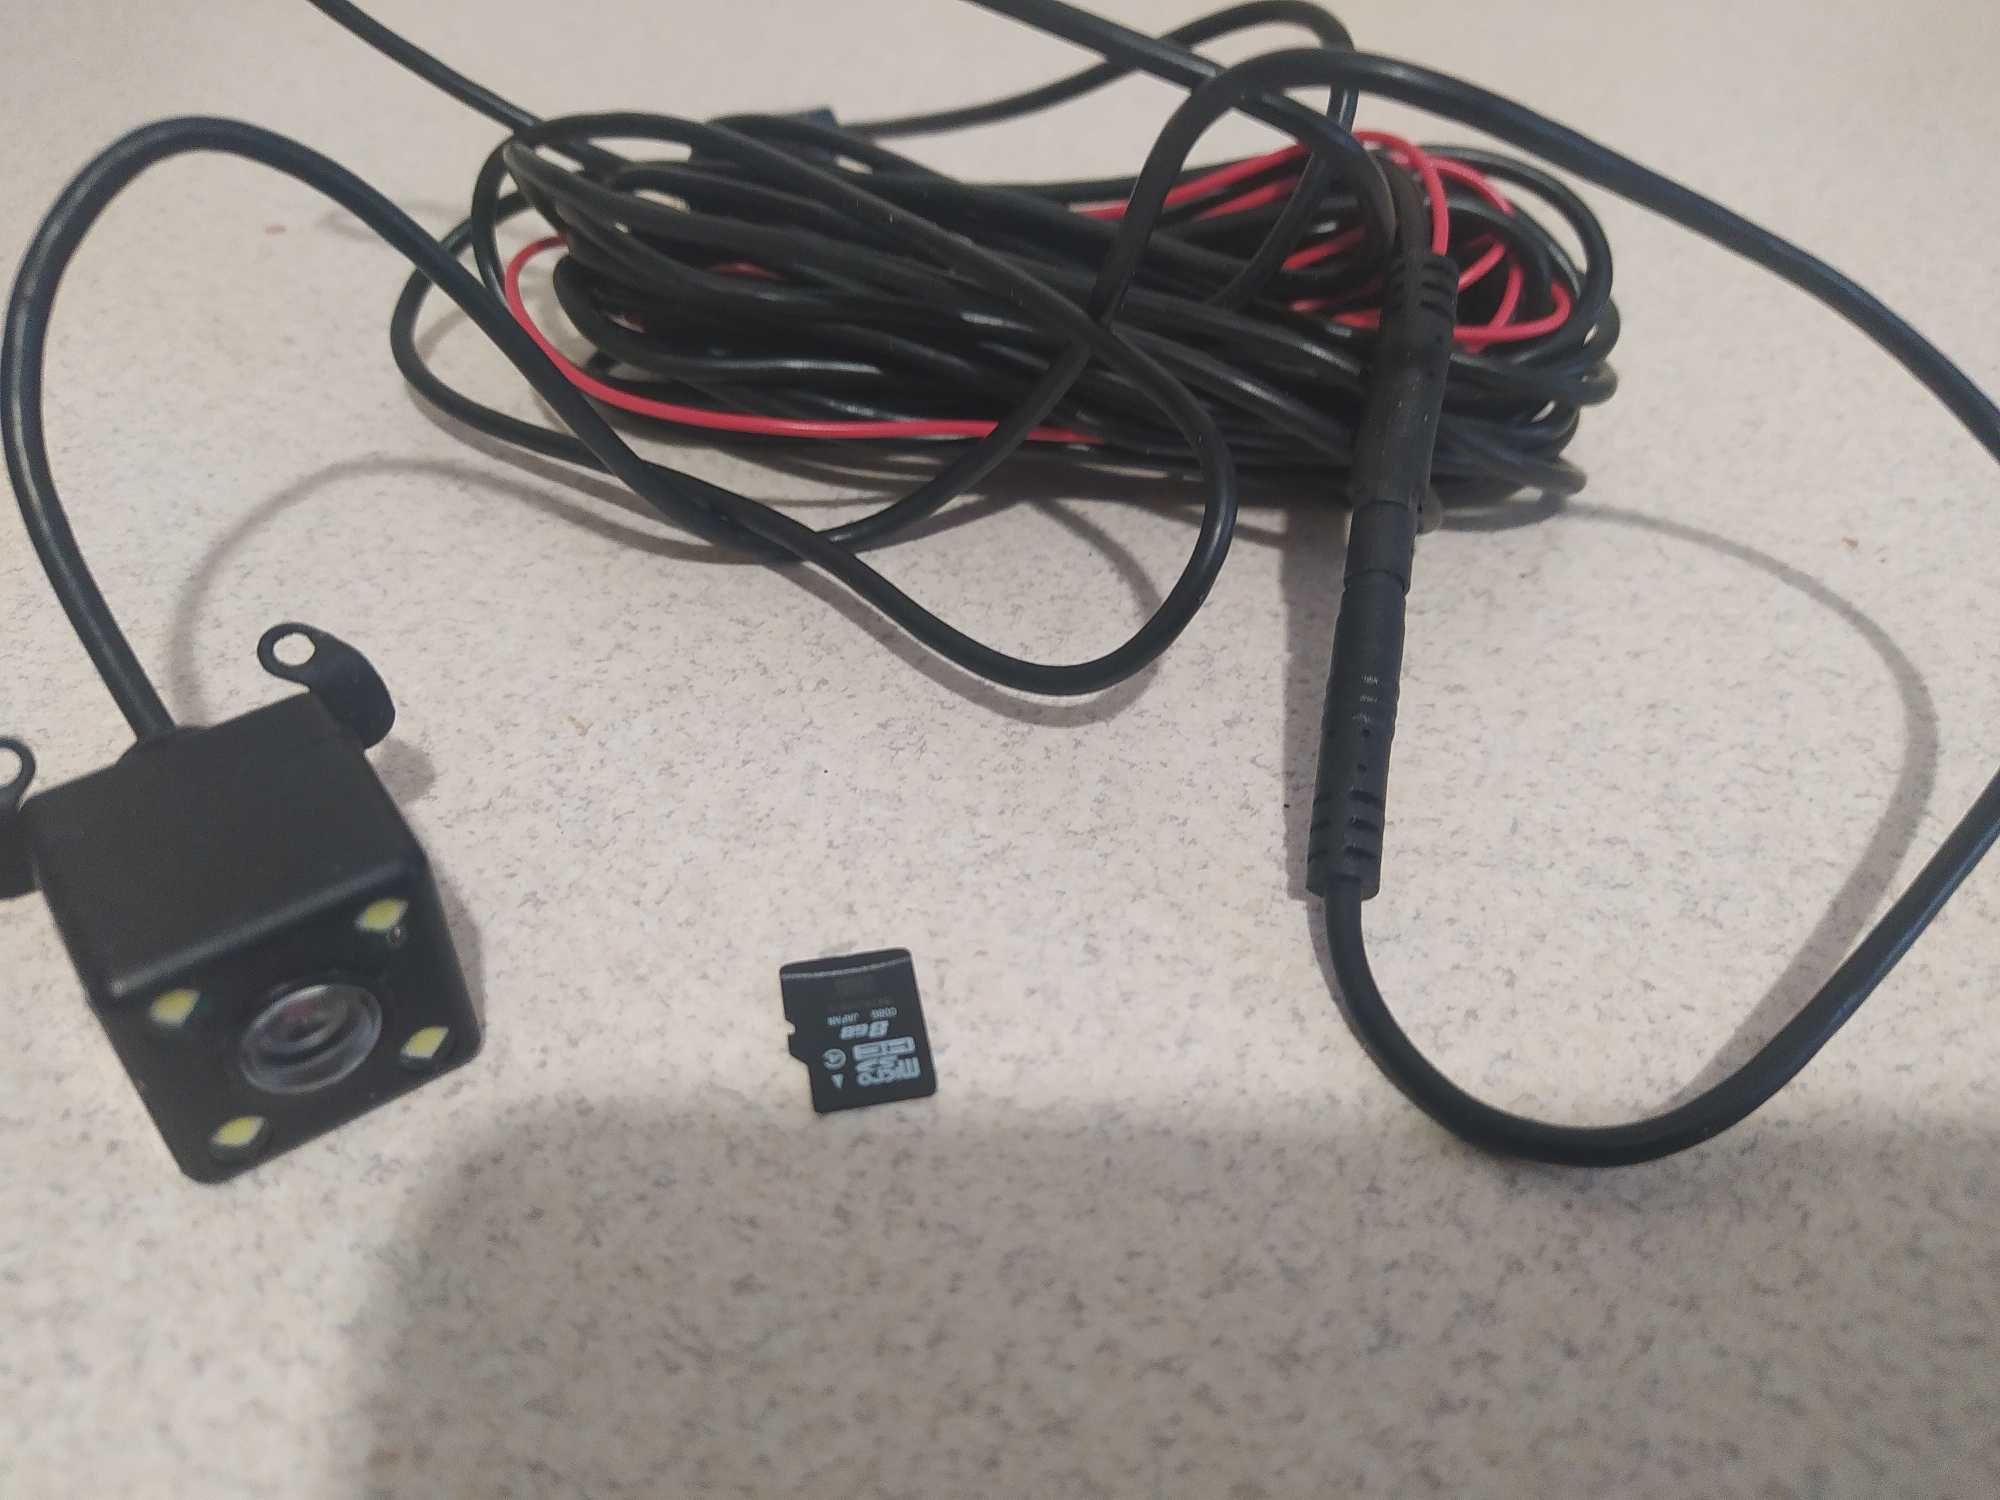 Nowy wideorejestrator NOR-TEC z kamera cofania i karta pamieci